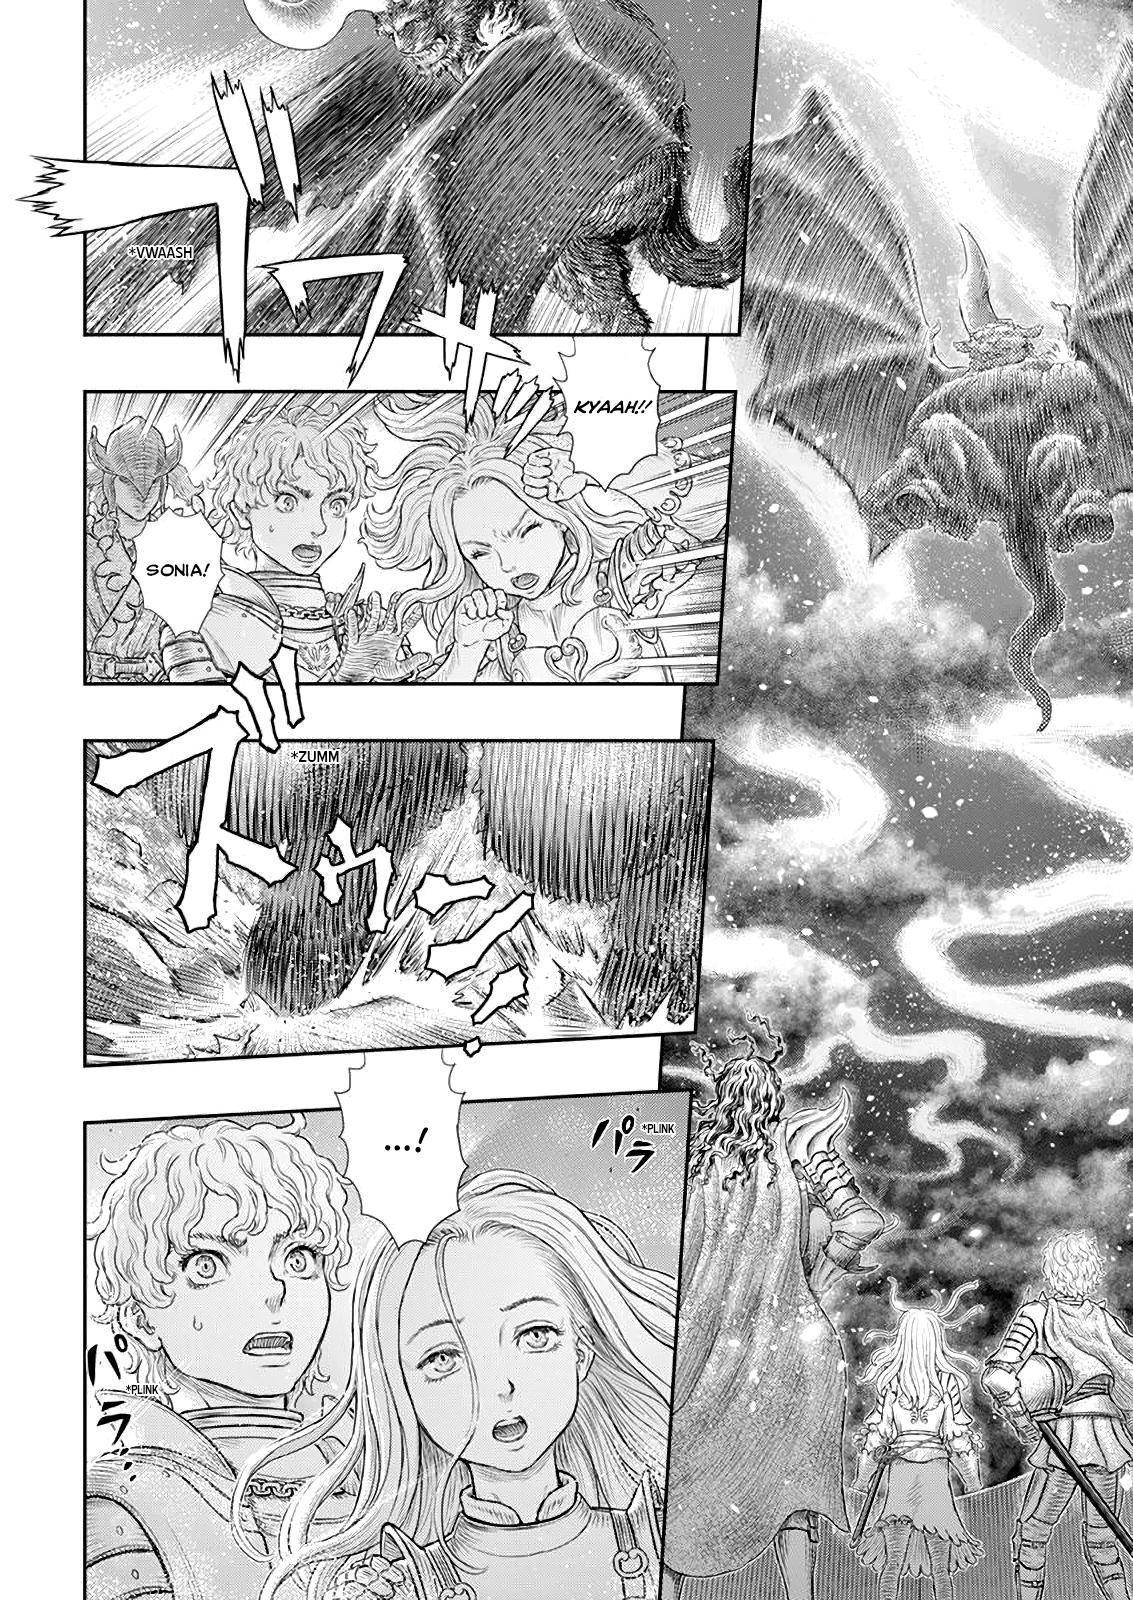 Berserk Manga Chapter 371 image 16